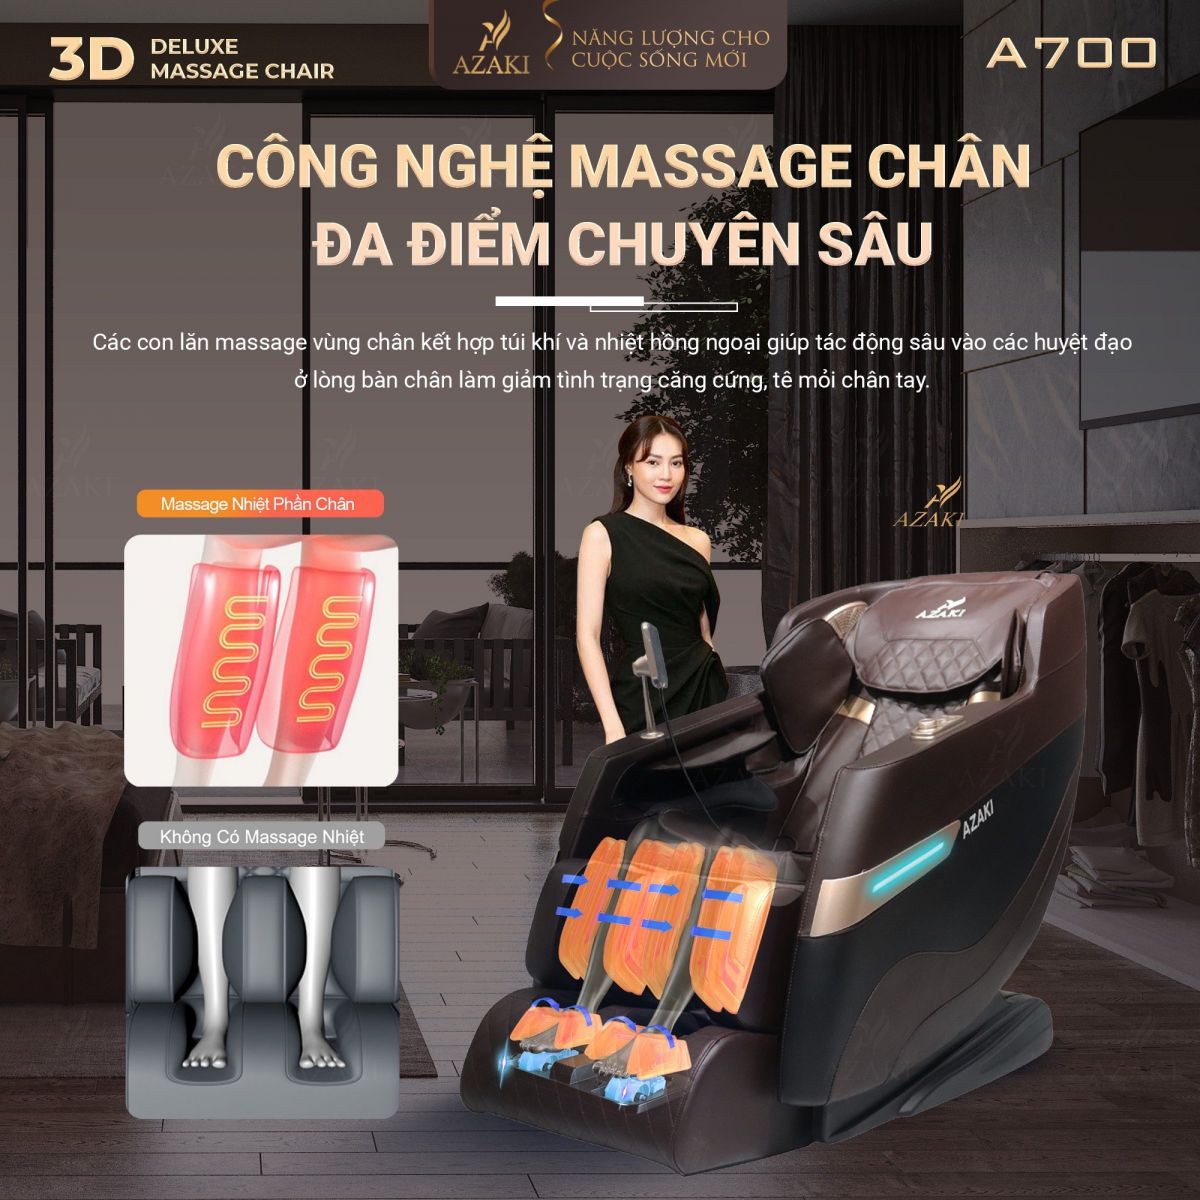 Công nghệ massage chân đa điểm của Ghế Massage Azaki A700 - Đen Chính Hãng